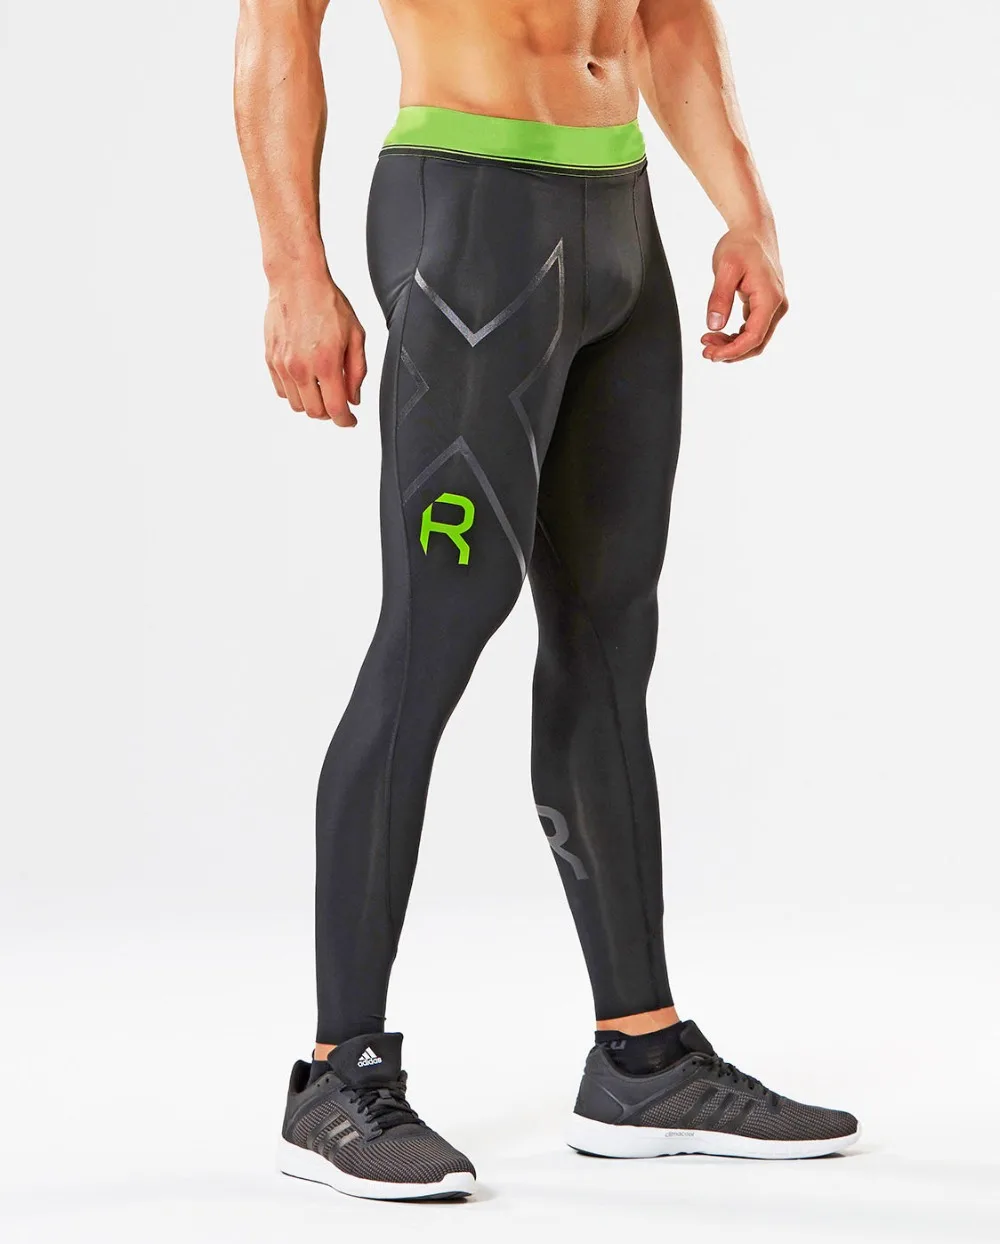 Новый бренд фитнес мужское трико тренажерный зал Yoag брюки Jogger спортивные Леггинсы Спортивная одежда Jog эластичные брюки